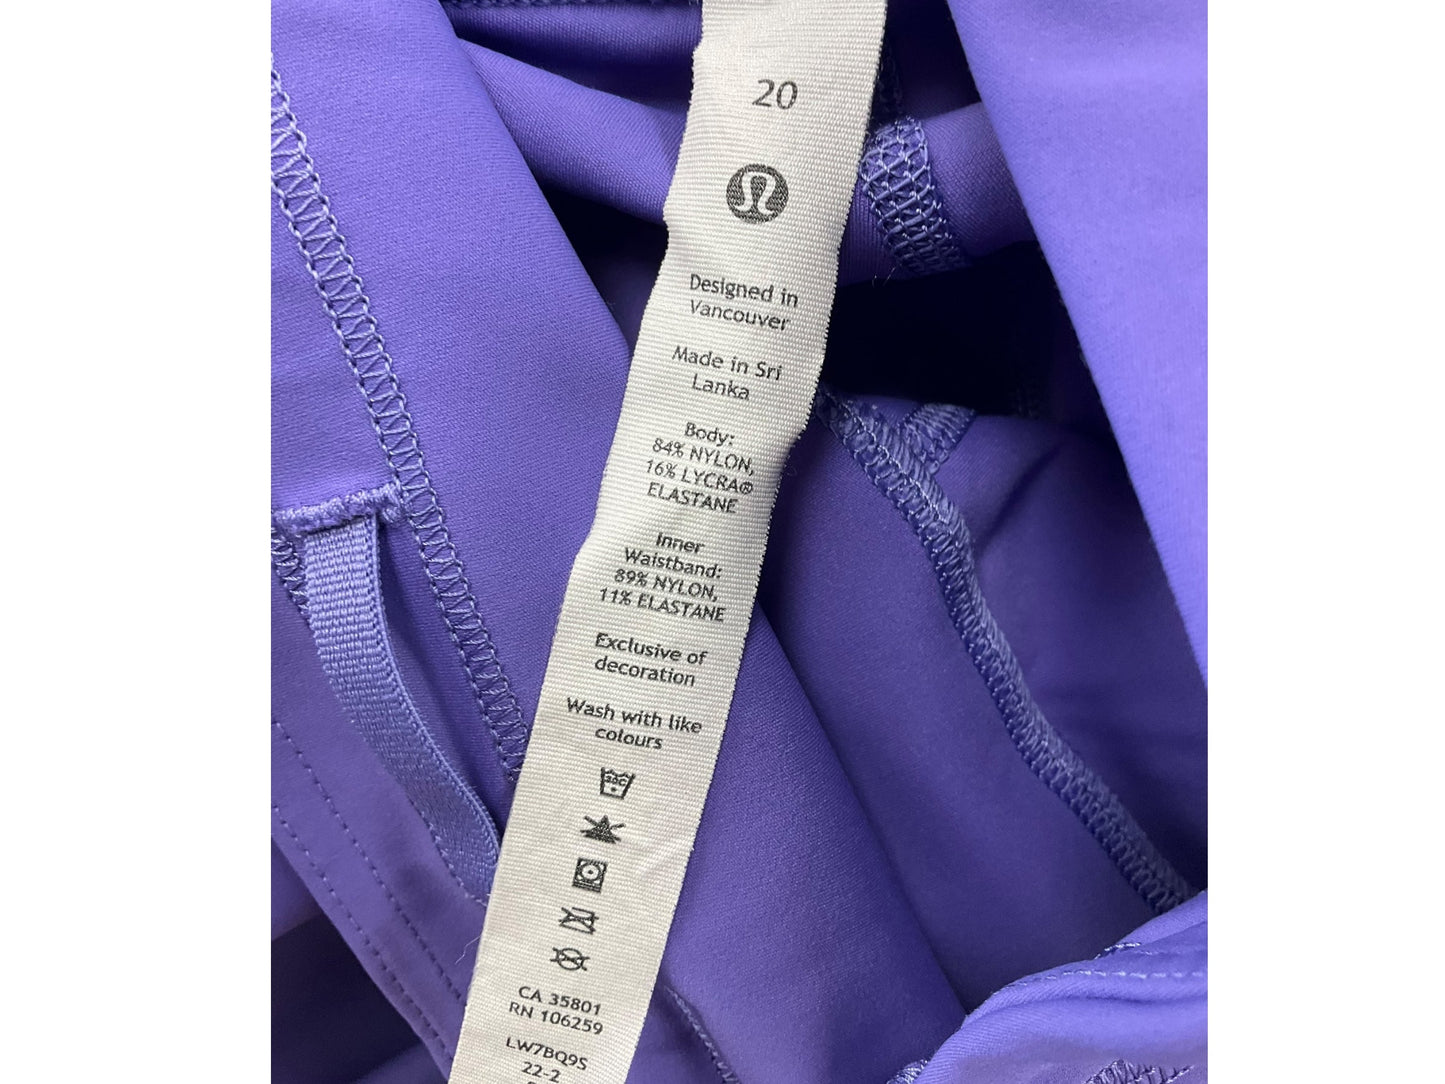 Purple Athletic Shorts Lululemon, Size 1x